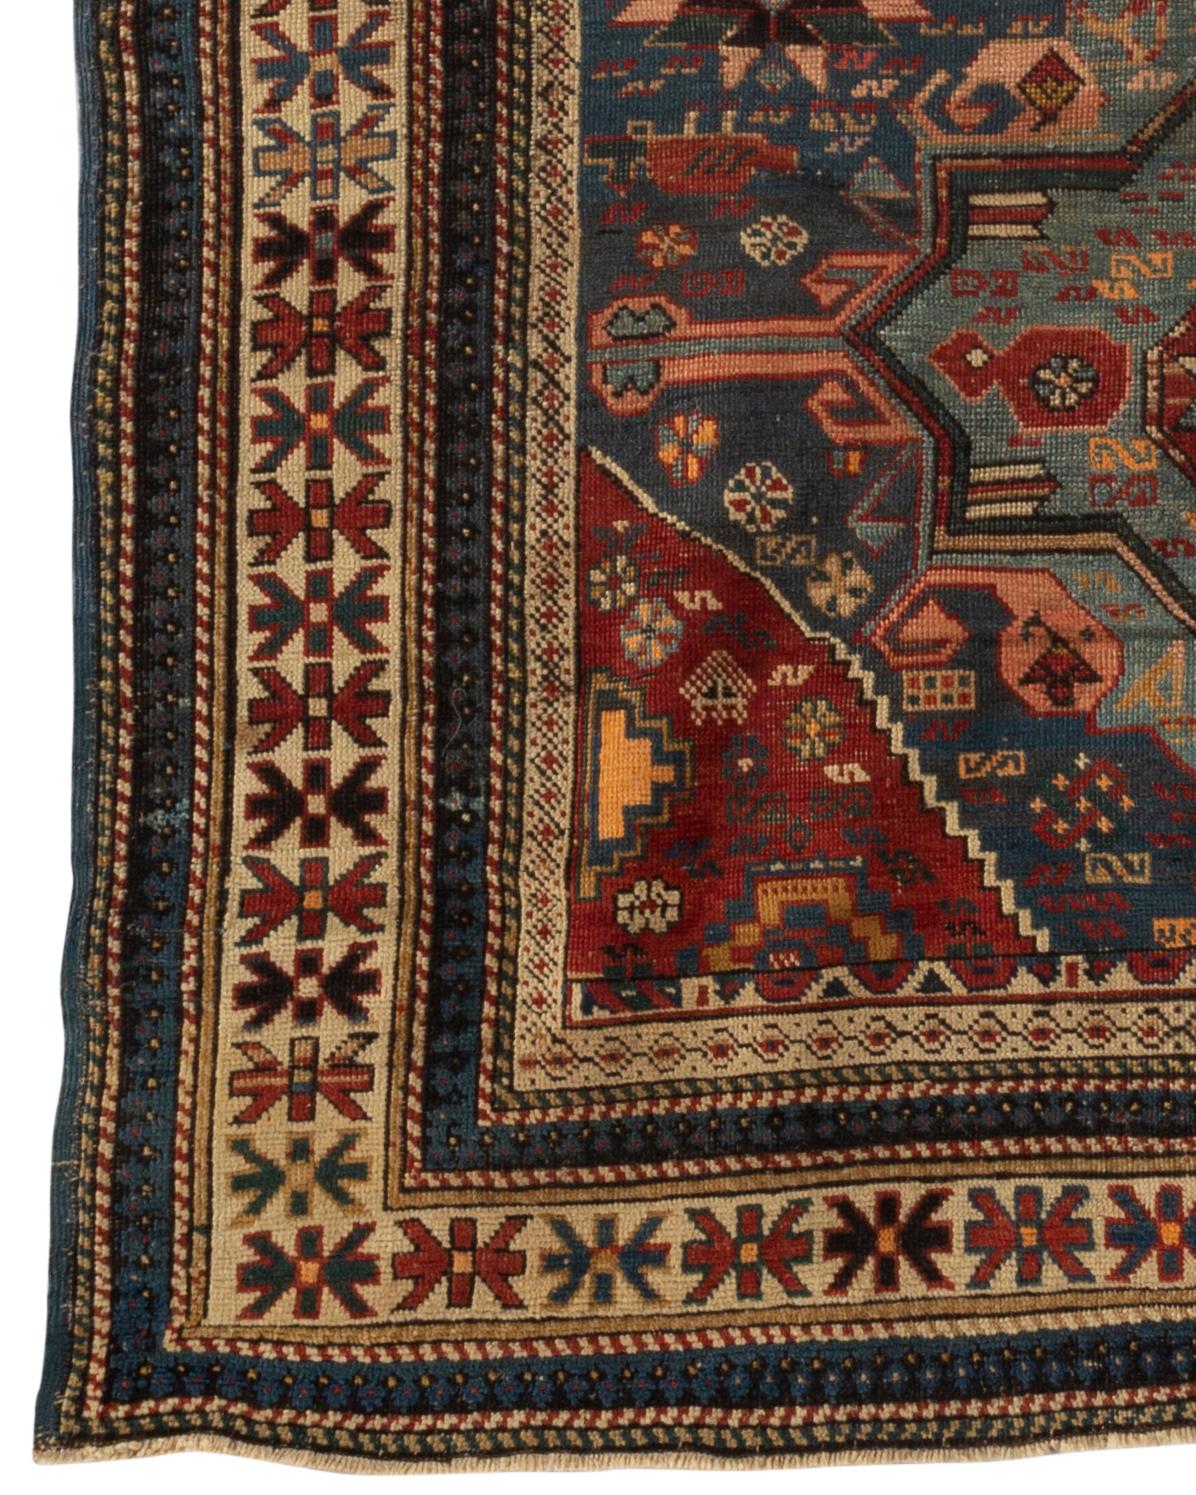 Antiker kaukasischer Schirwan-Teppich, um 1880. Das Feld in sanften Blautönen mit drei zentralen Motiven ist mit floralen und ethnischen Mustern gefüllt und von den typischen kaukasischen Mehrfachbordüren umgeben. Diese Art von antiken kaukasischen